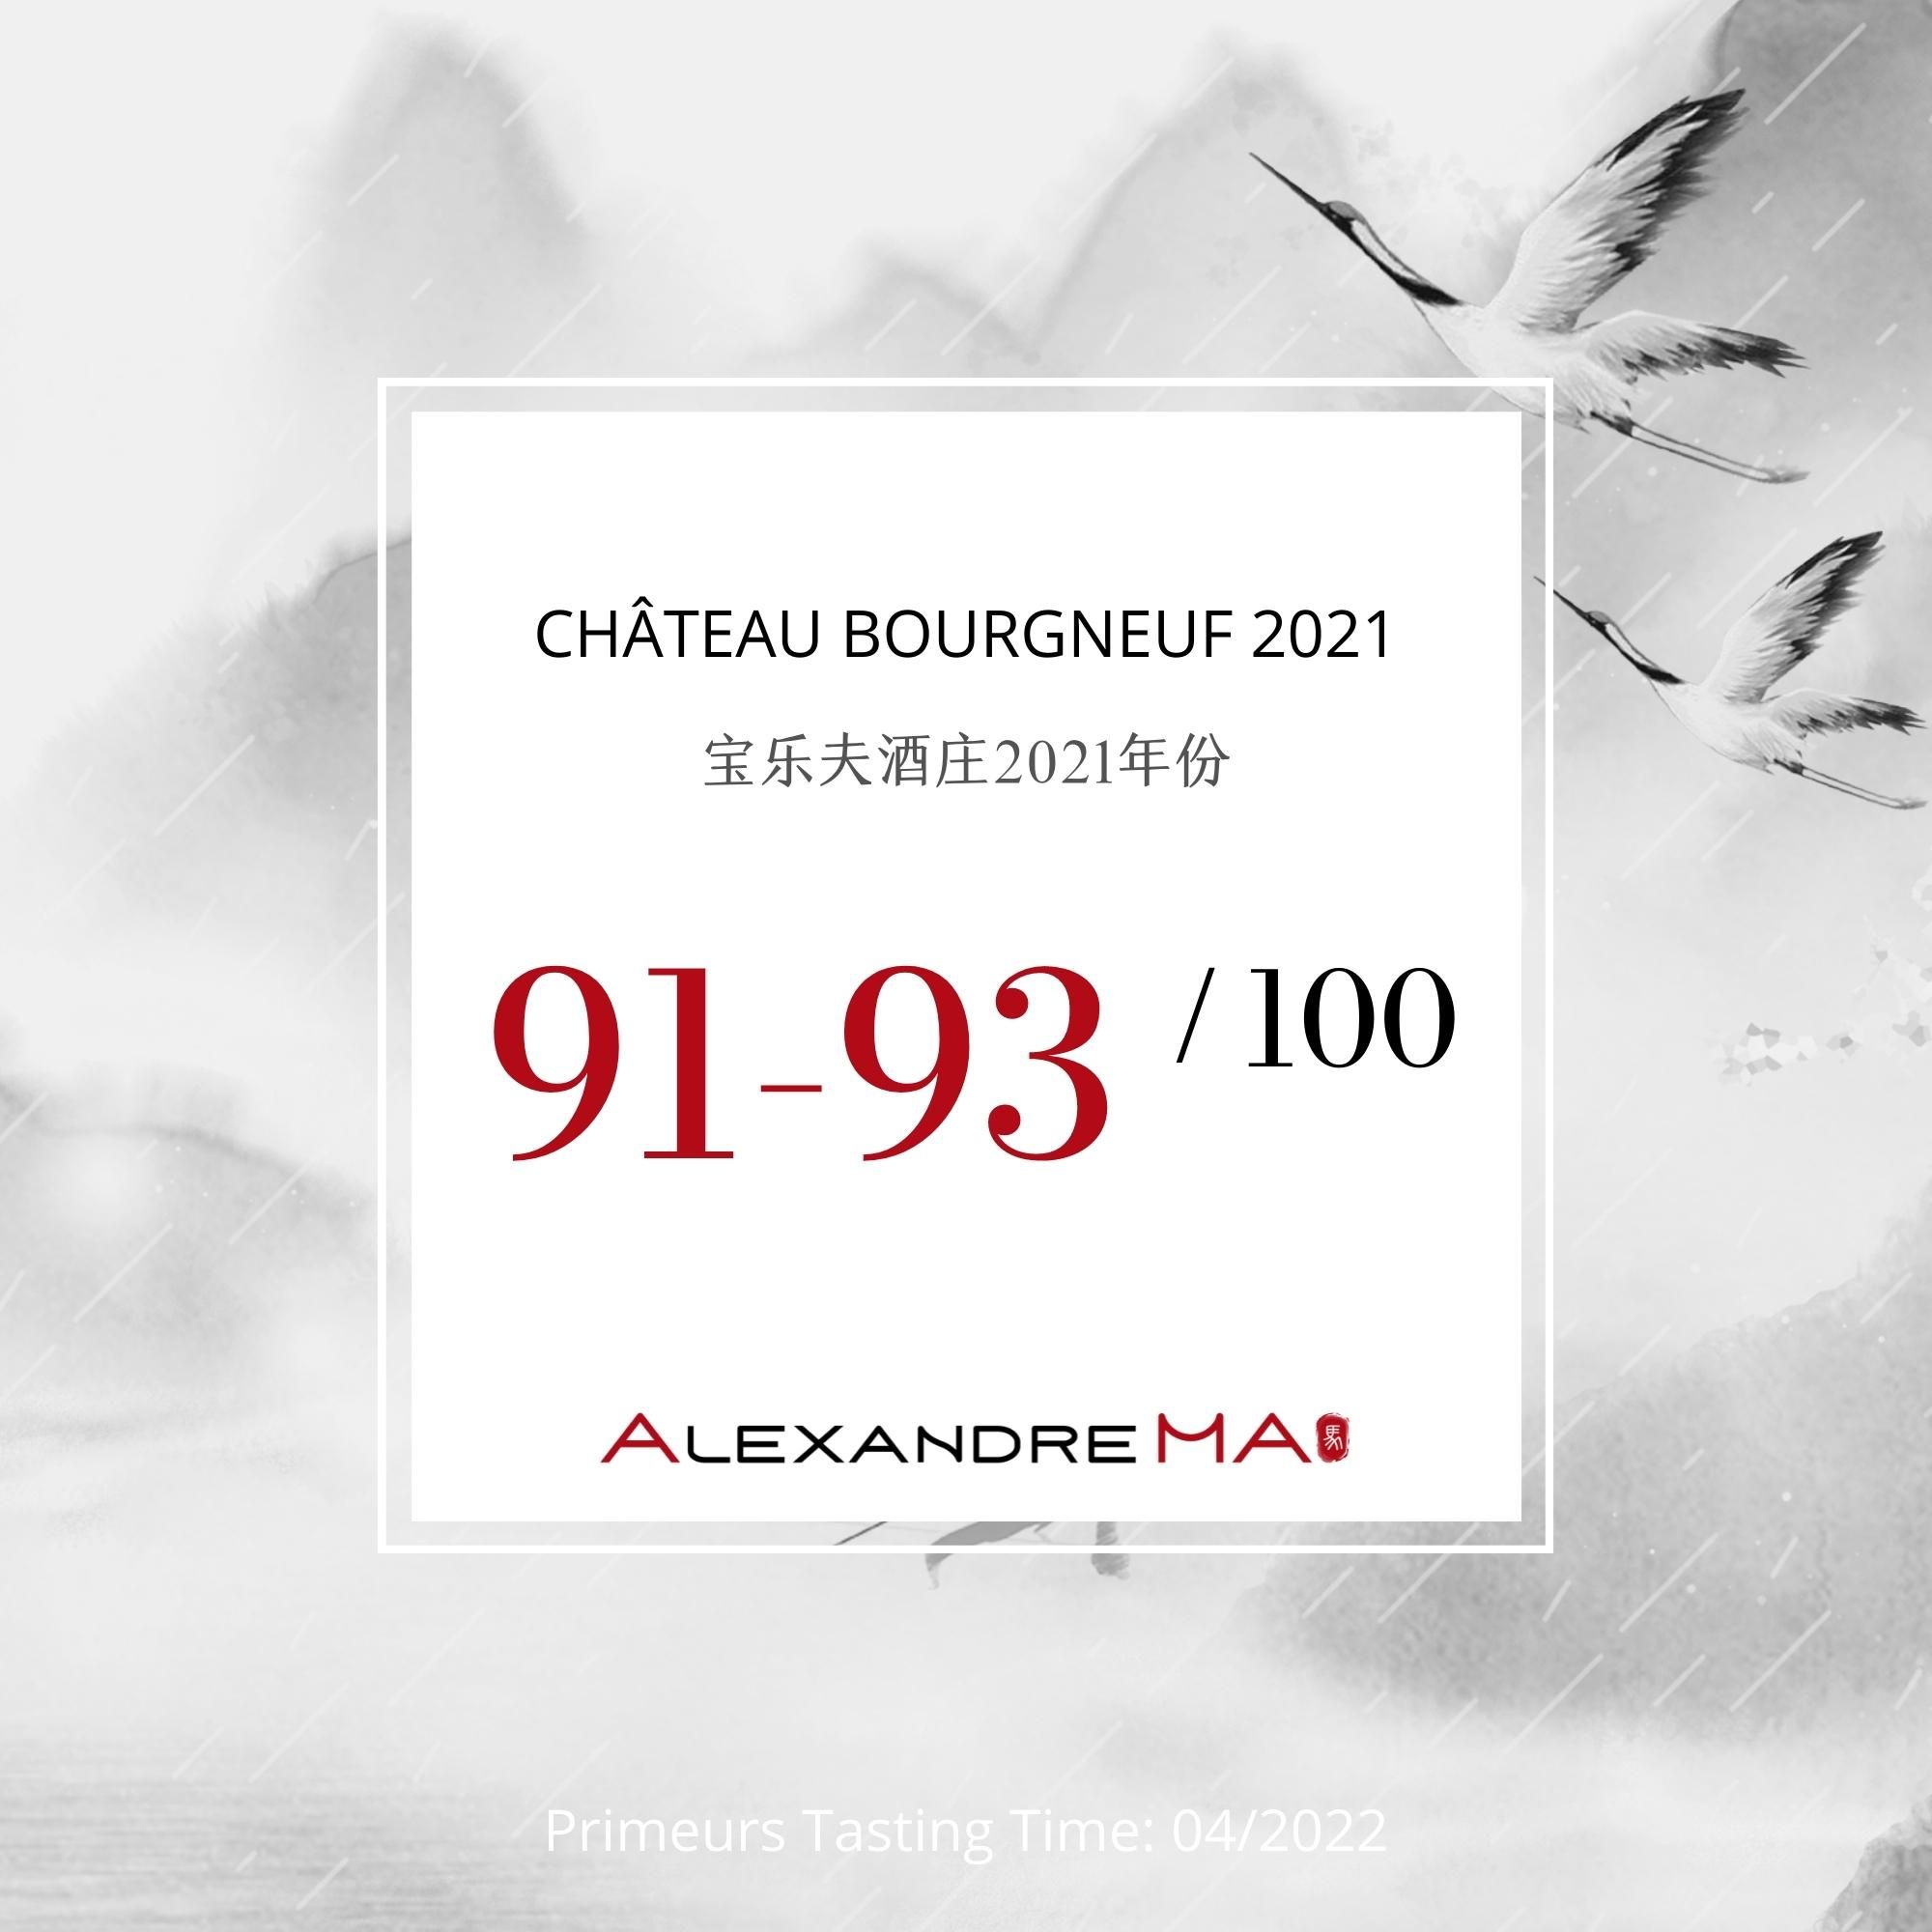 Château Bourgneuf 2021 - Alexandre MA